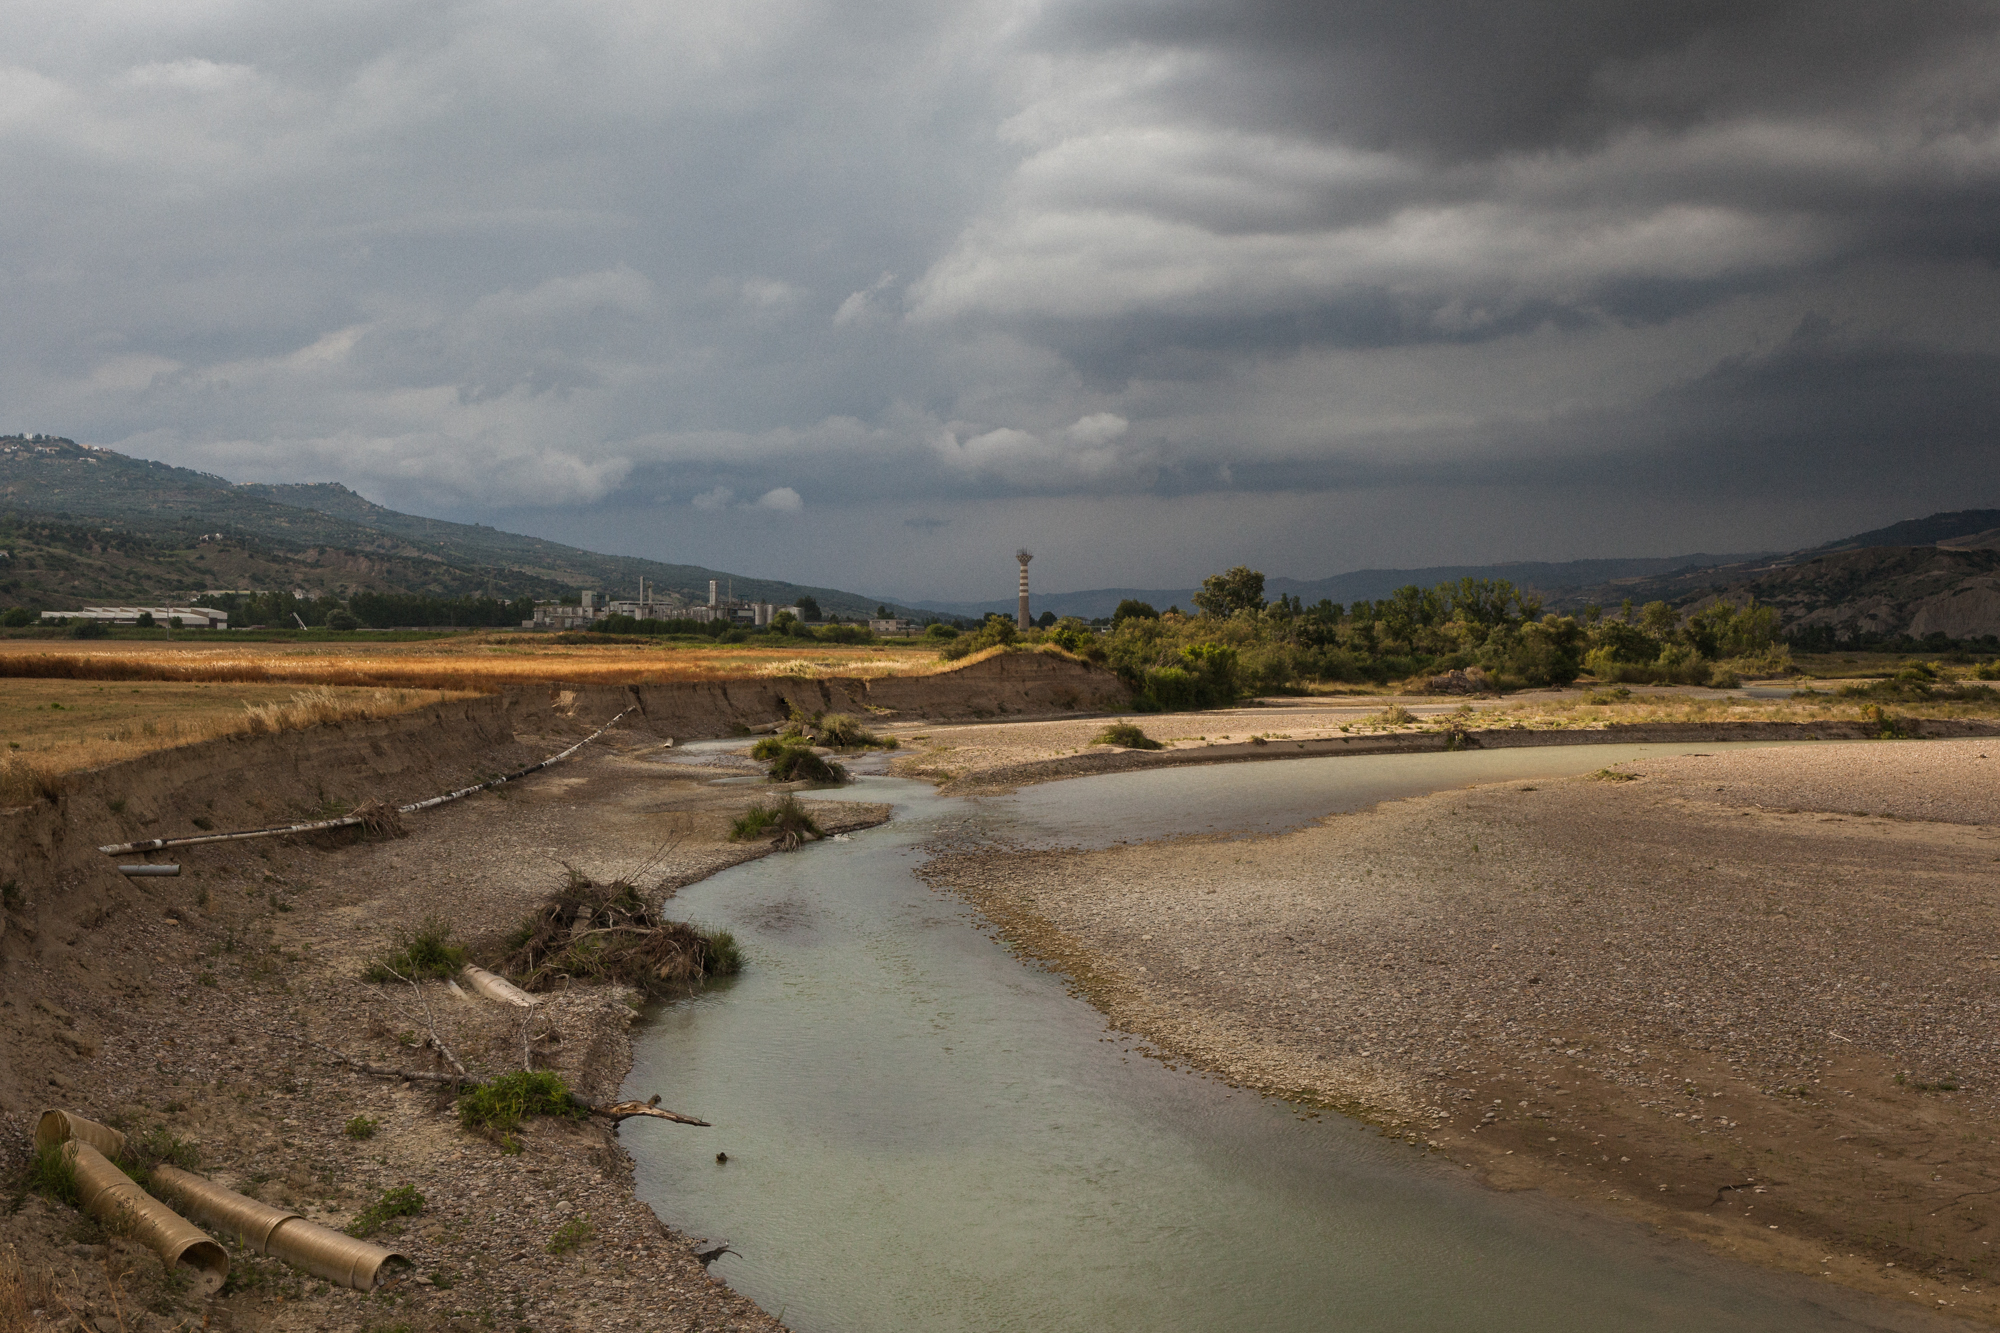  Il fiume Basento, sullo sfondo l’area industriale di Ferrandina (MT), 2015. Il fiume scorre tra i campi coltivati a grano e l’area industriale, per poi sfociare nel mar Ionio. Indagini dell’ARPA Basilicata ne hanno evidenziato lo stato critico: sono